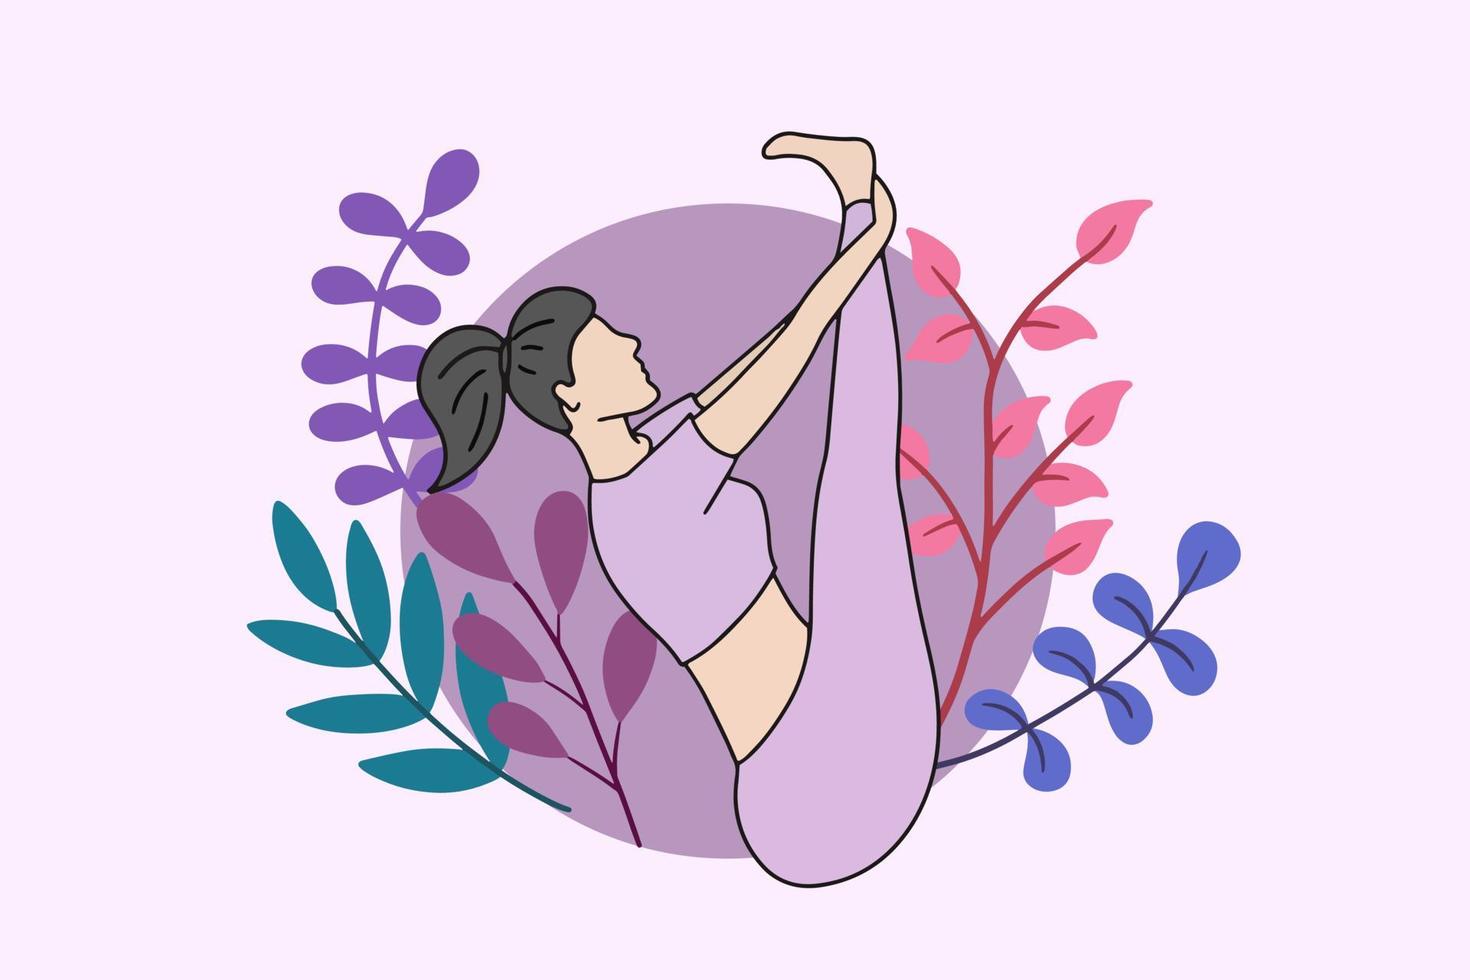 mulher meditando na ilustração da natureza pacífica, ioga e conceito de estilo de vida saudável, design de desenho animado plano vetor